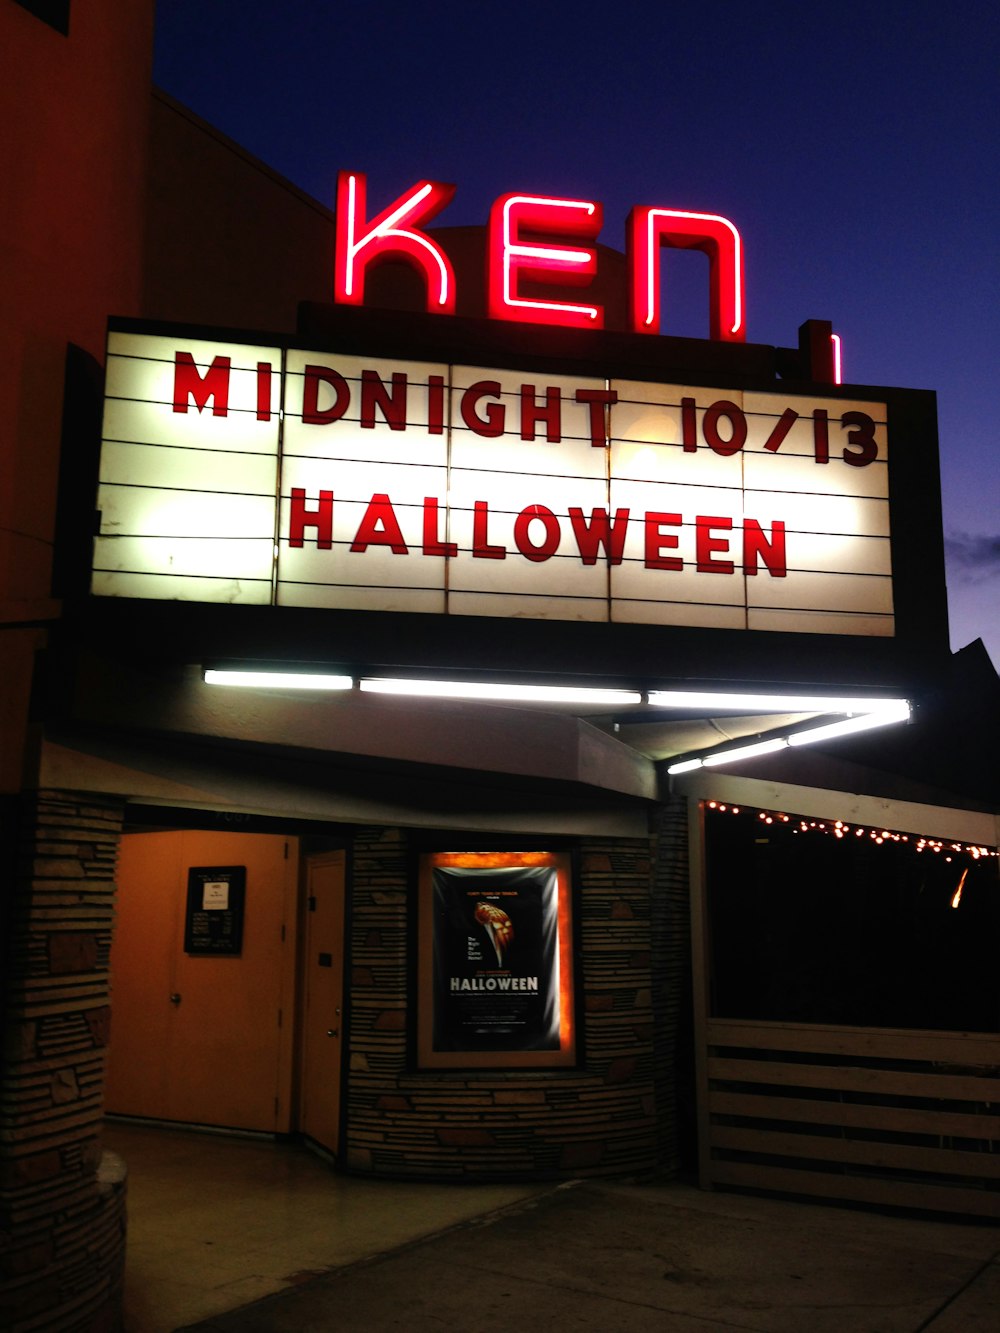 Ein Theaterzelt mit einem beleuchteten Schild mit der Aufschrift Midnight 101 / 13 Halloween